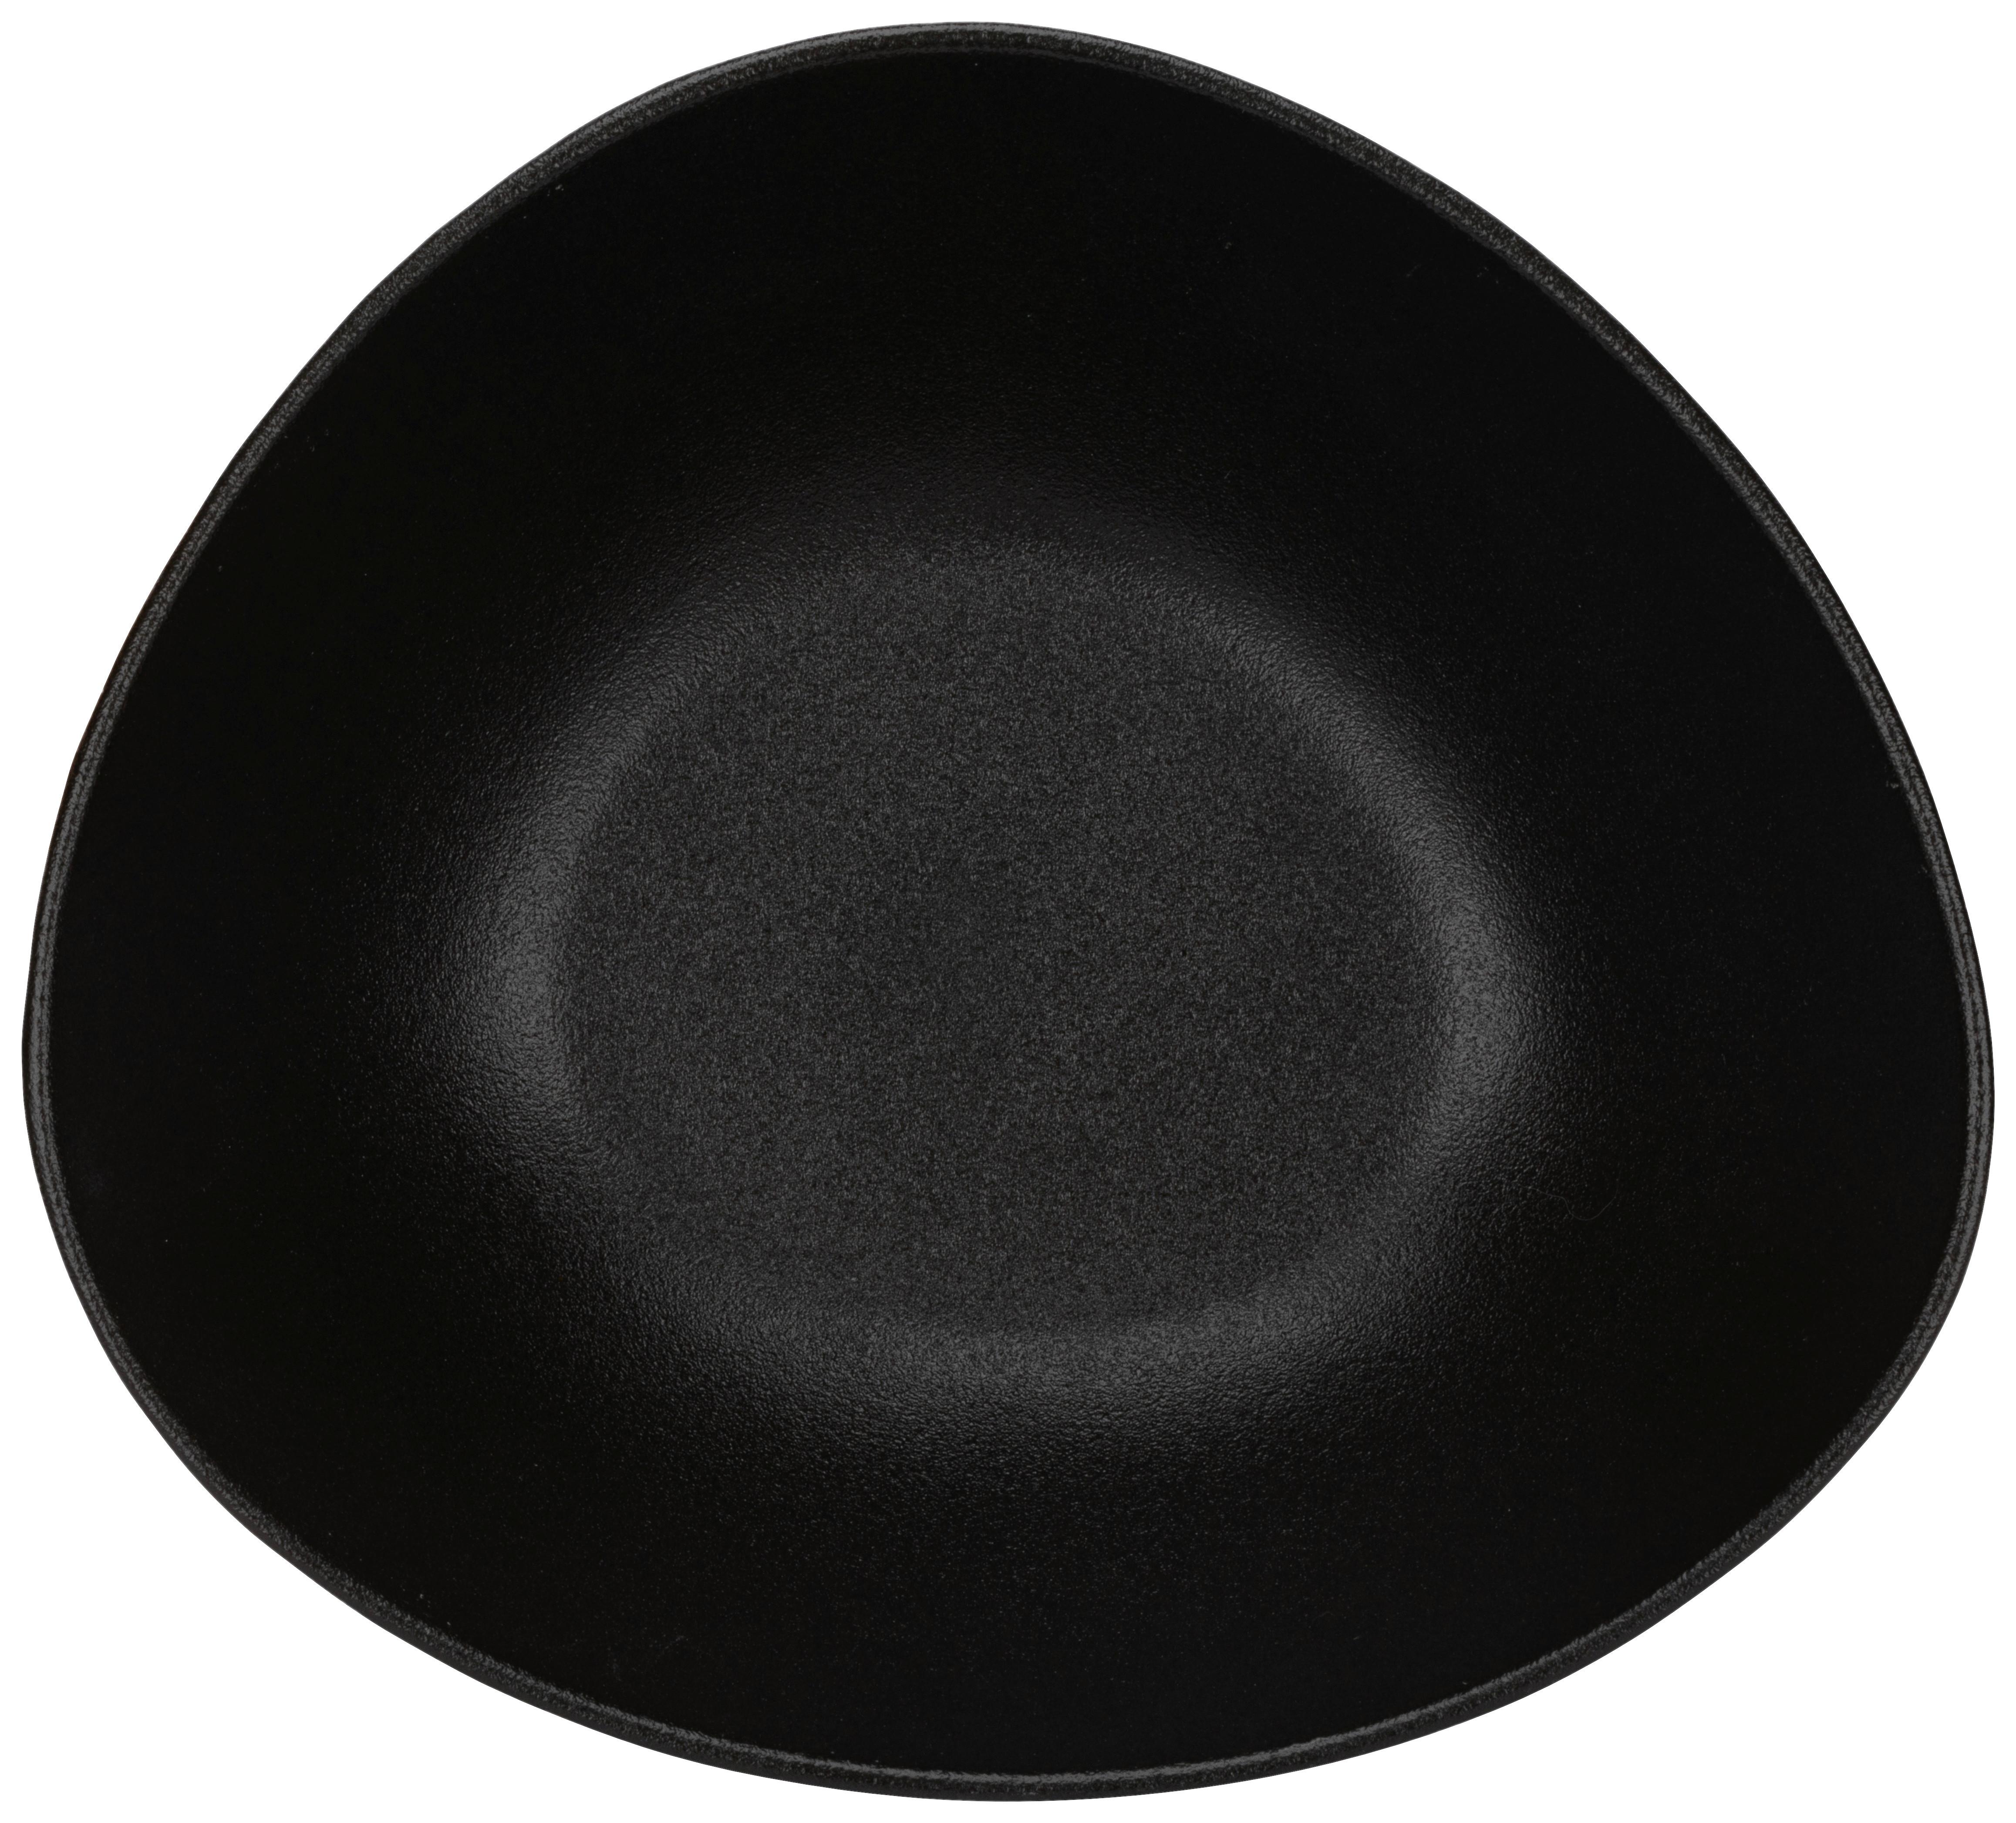 Salátová Mísa Haruki - černá, Moderní, keramika (25,4/23,5/9,5cm) - Premium Living